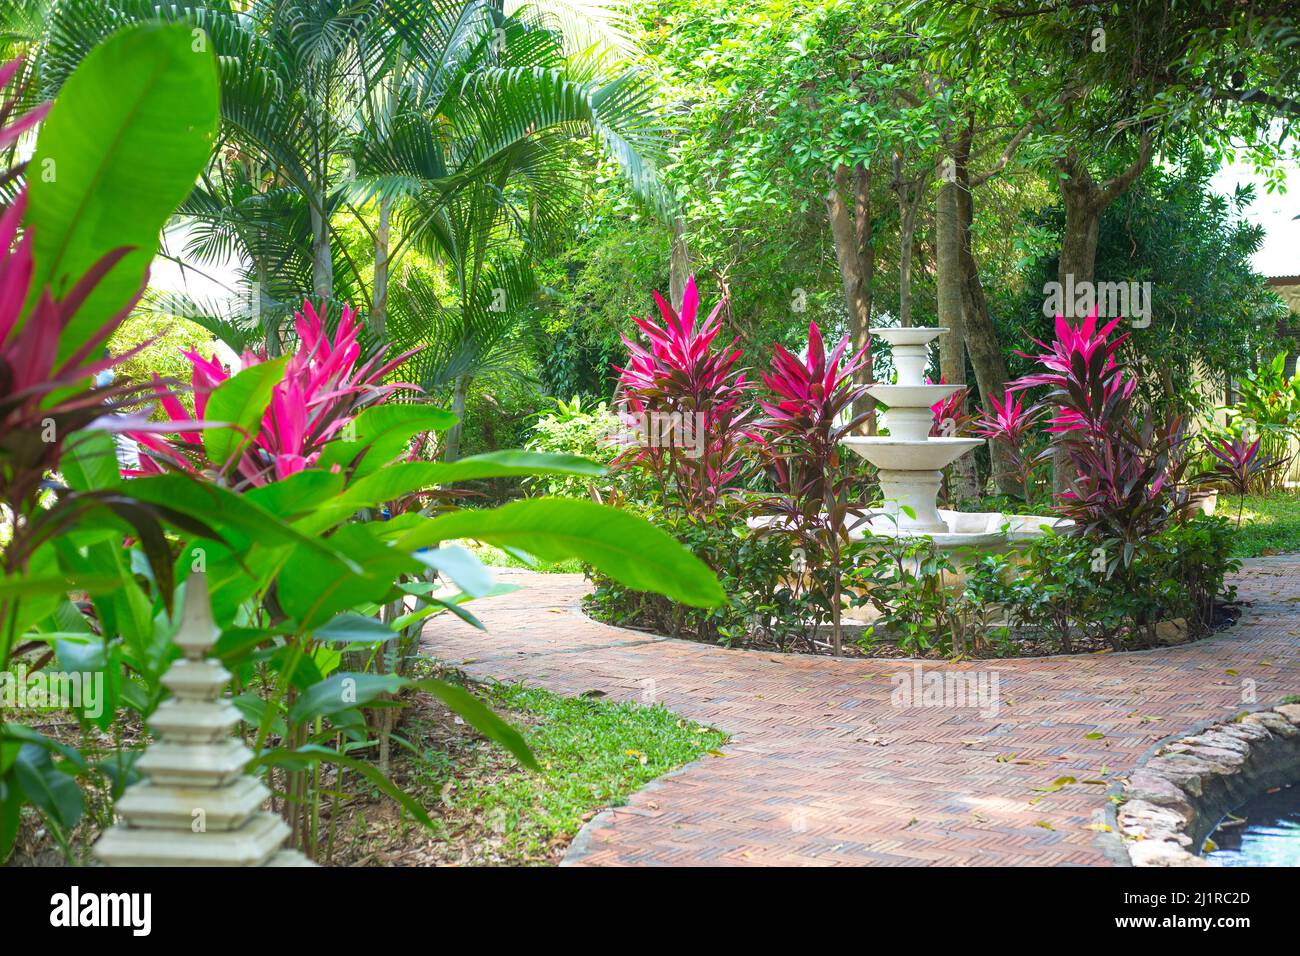 Parc tropical avec fleurs et arbres, sentiers et sculptures. Aménagement paysager du site. Banque D'Images